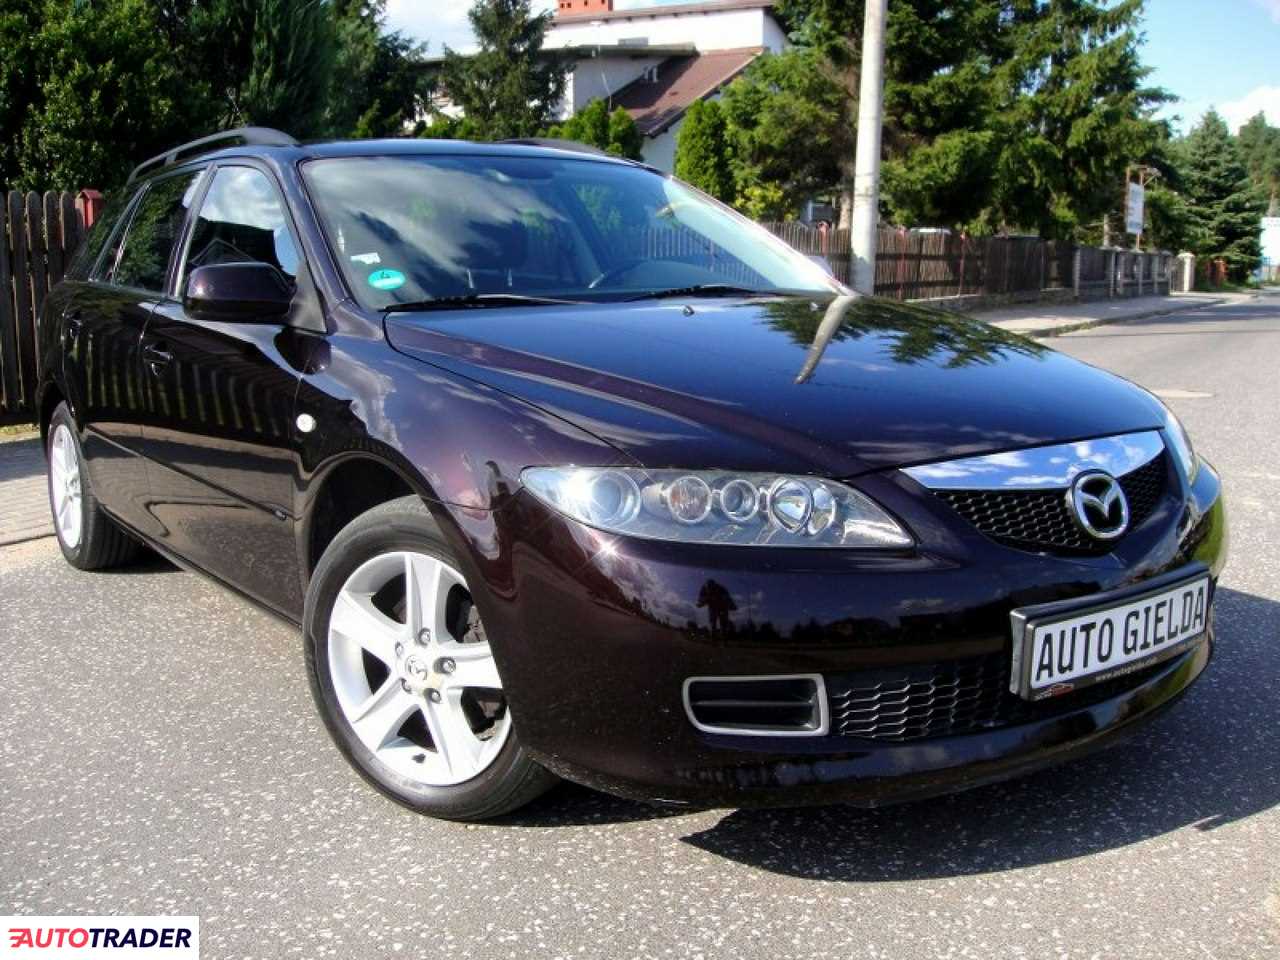 Mazda 6 2.0 benzyna 147 KM 2006r. (Nowa Wieś Rzeczna